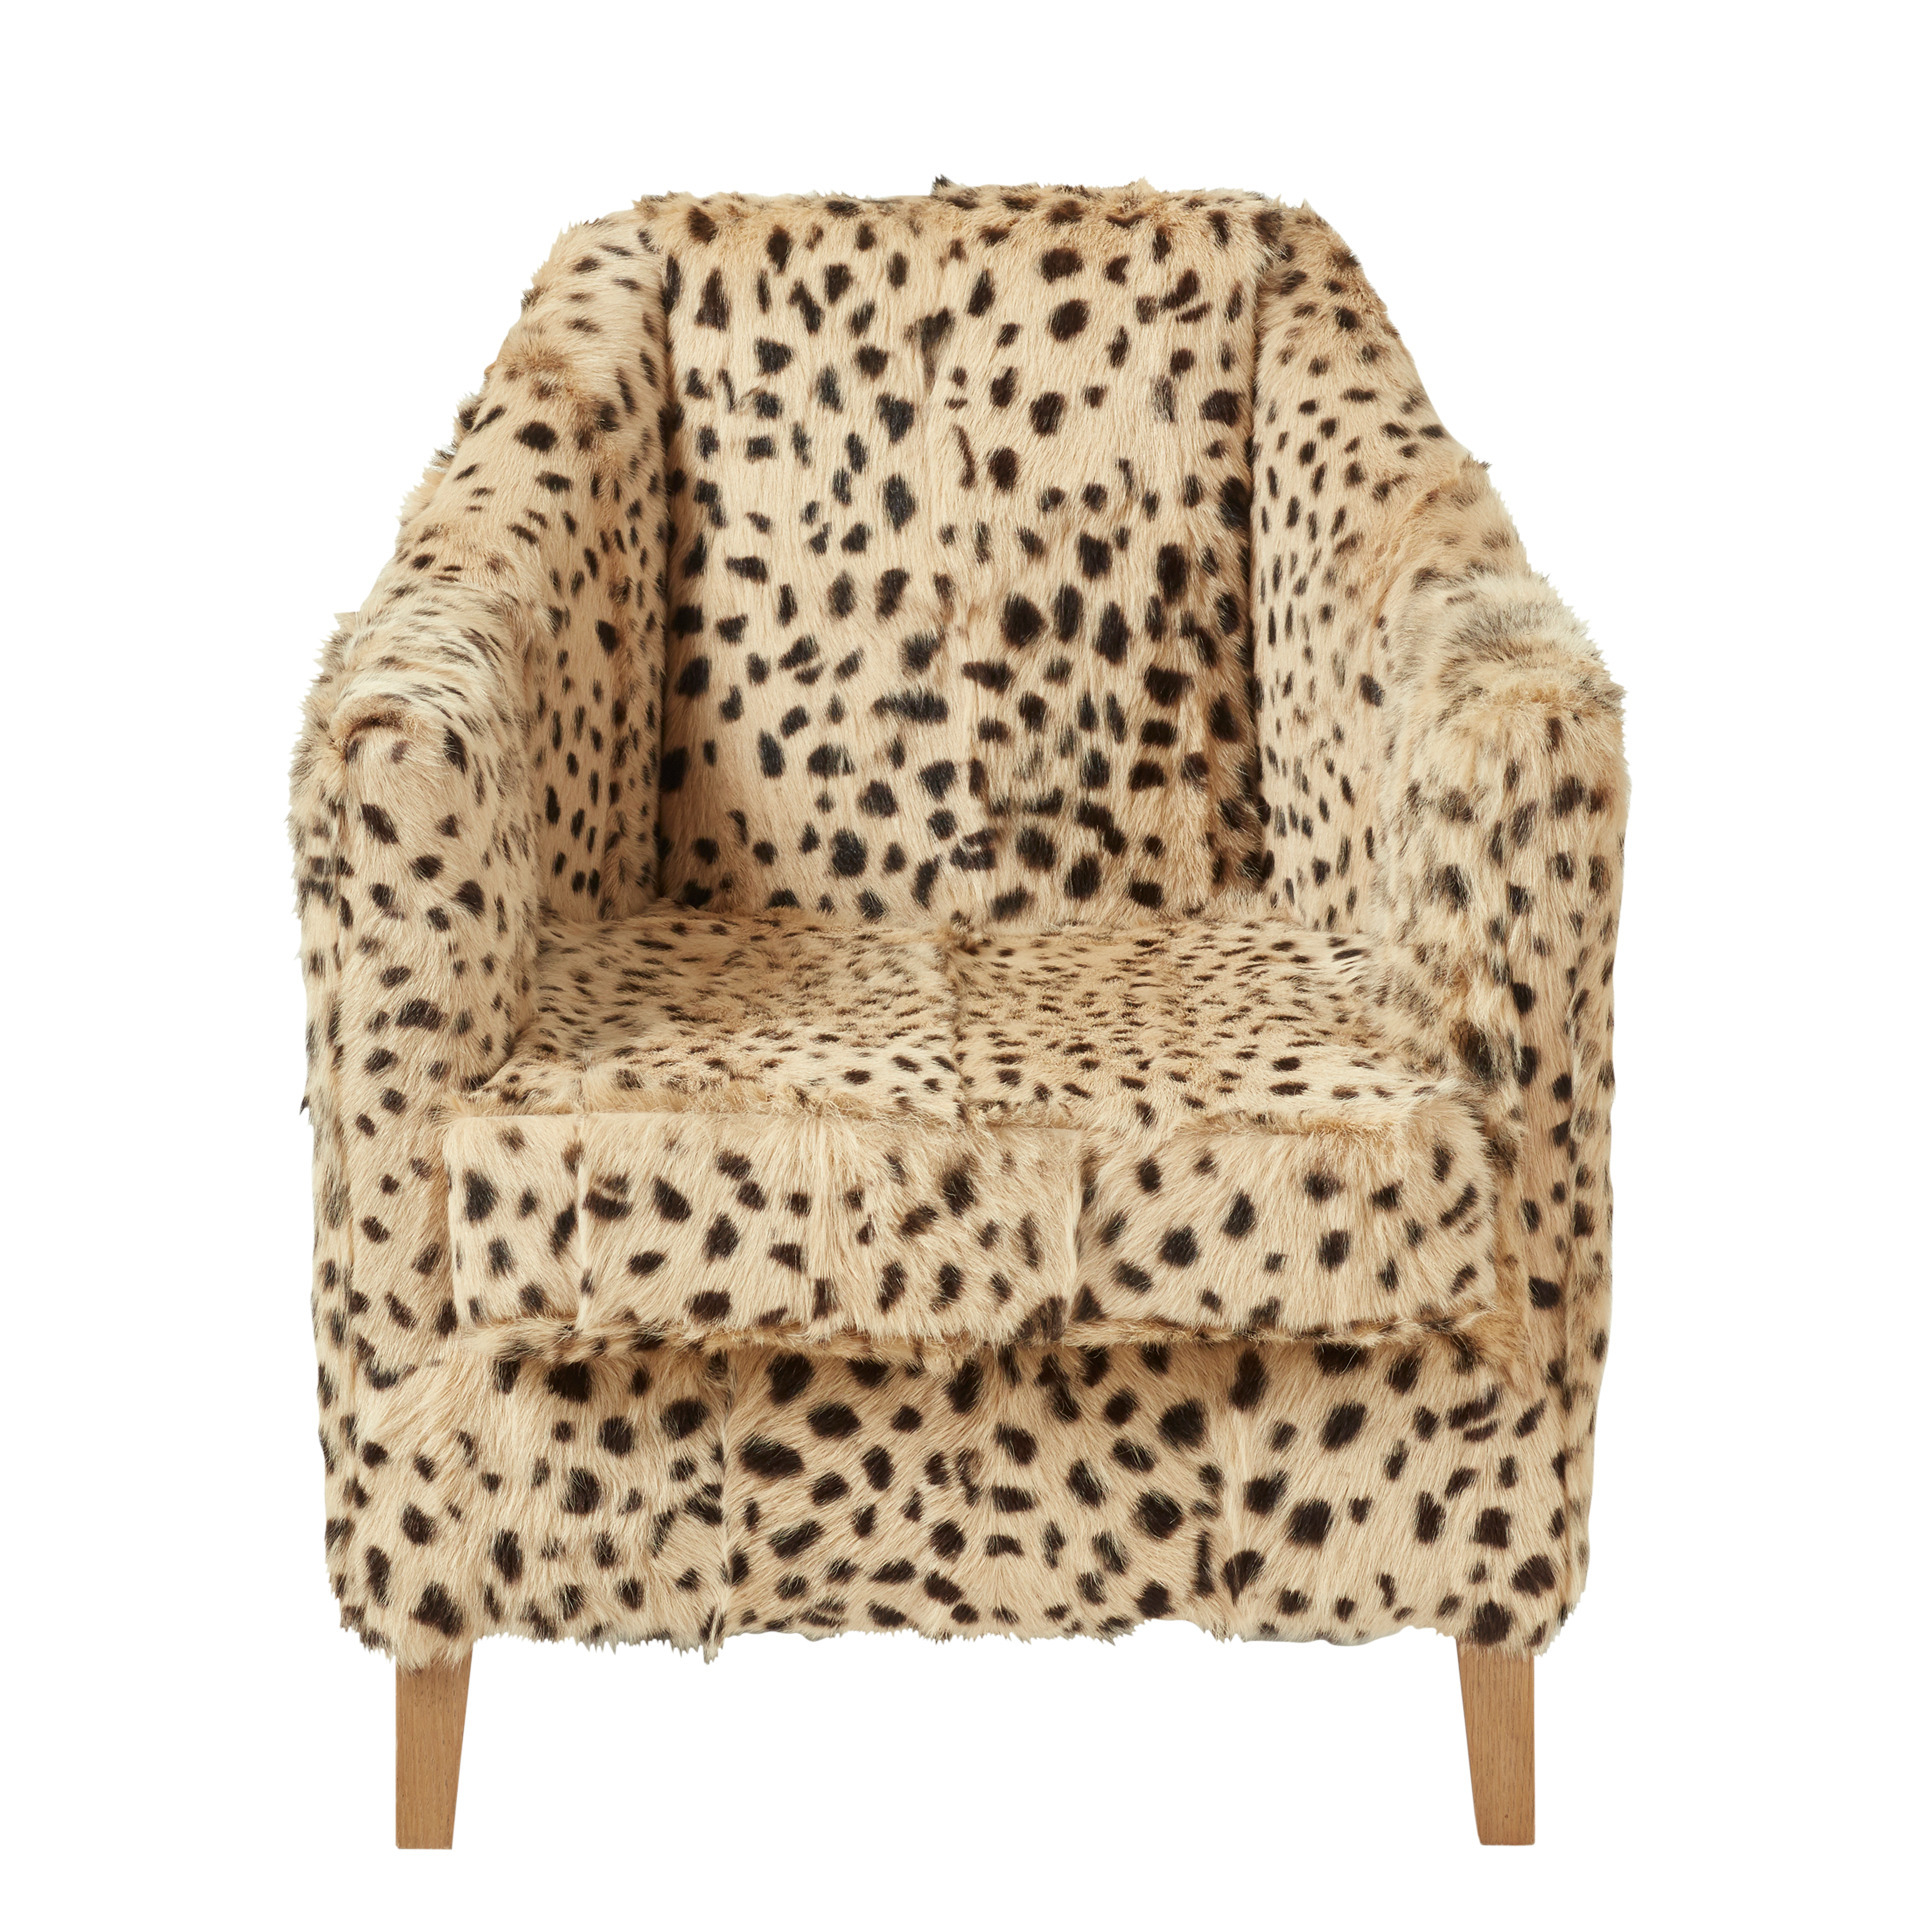 George Club Chair - Cheetah